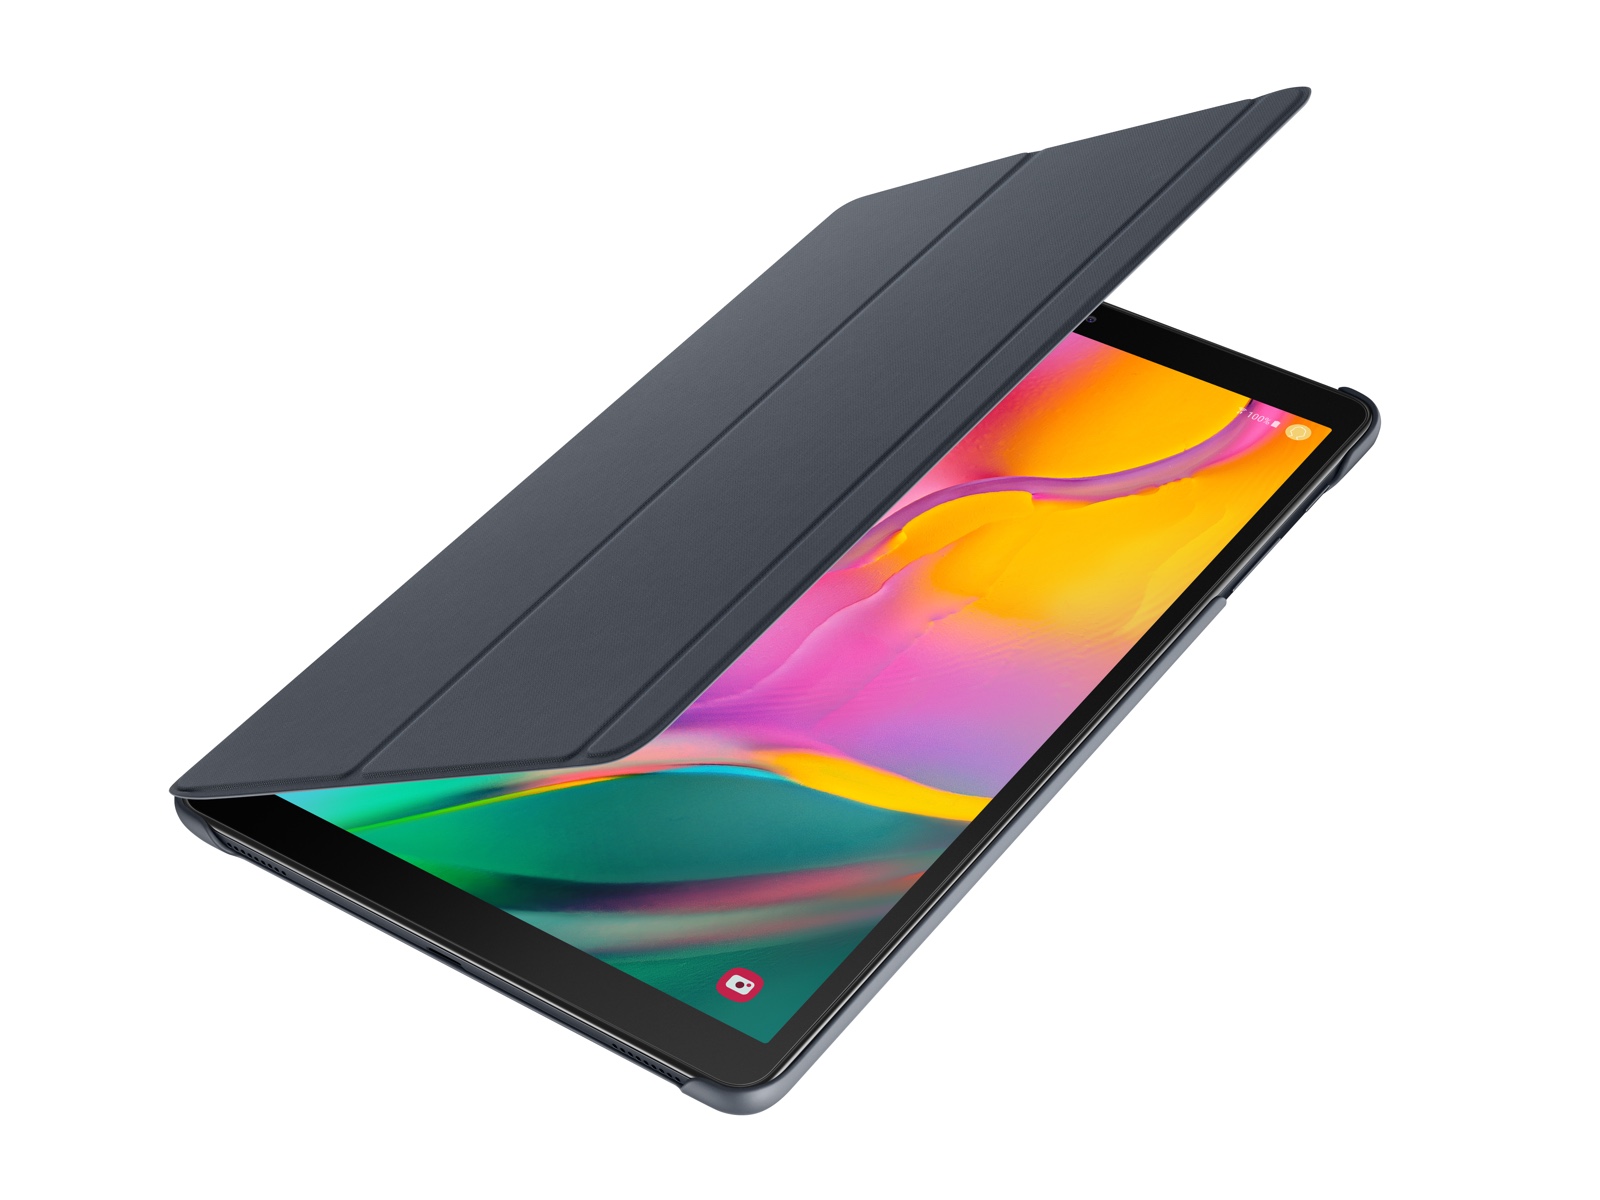 Funda para libro Galaxy Tab 10.1 - Accesorios para móviles negros EF-BT510CBEGUJ | Samsung EE.UU